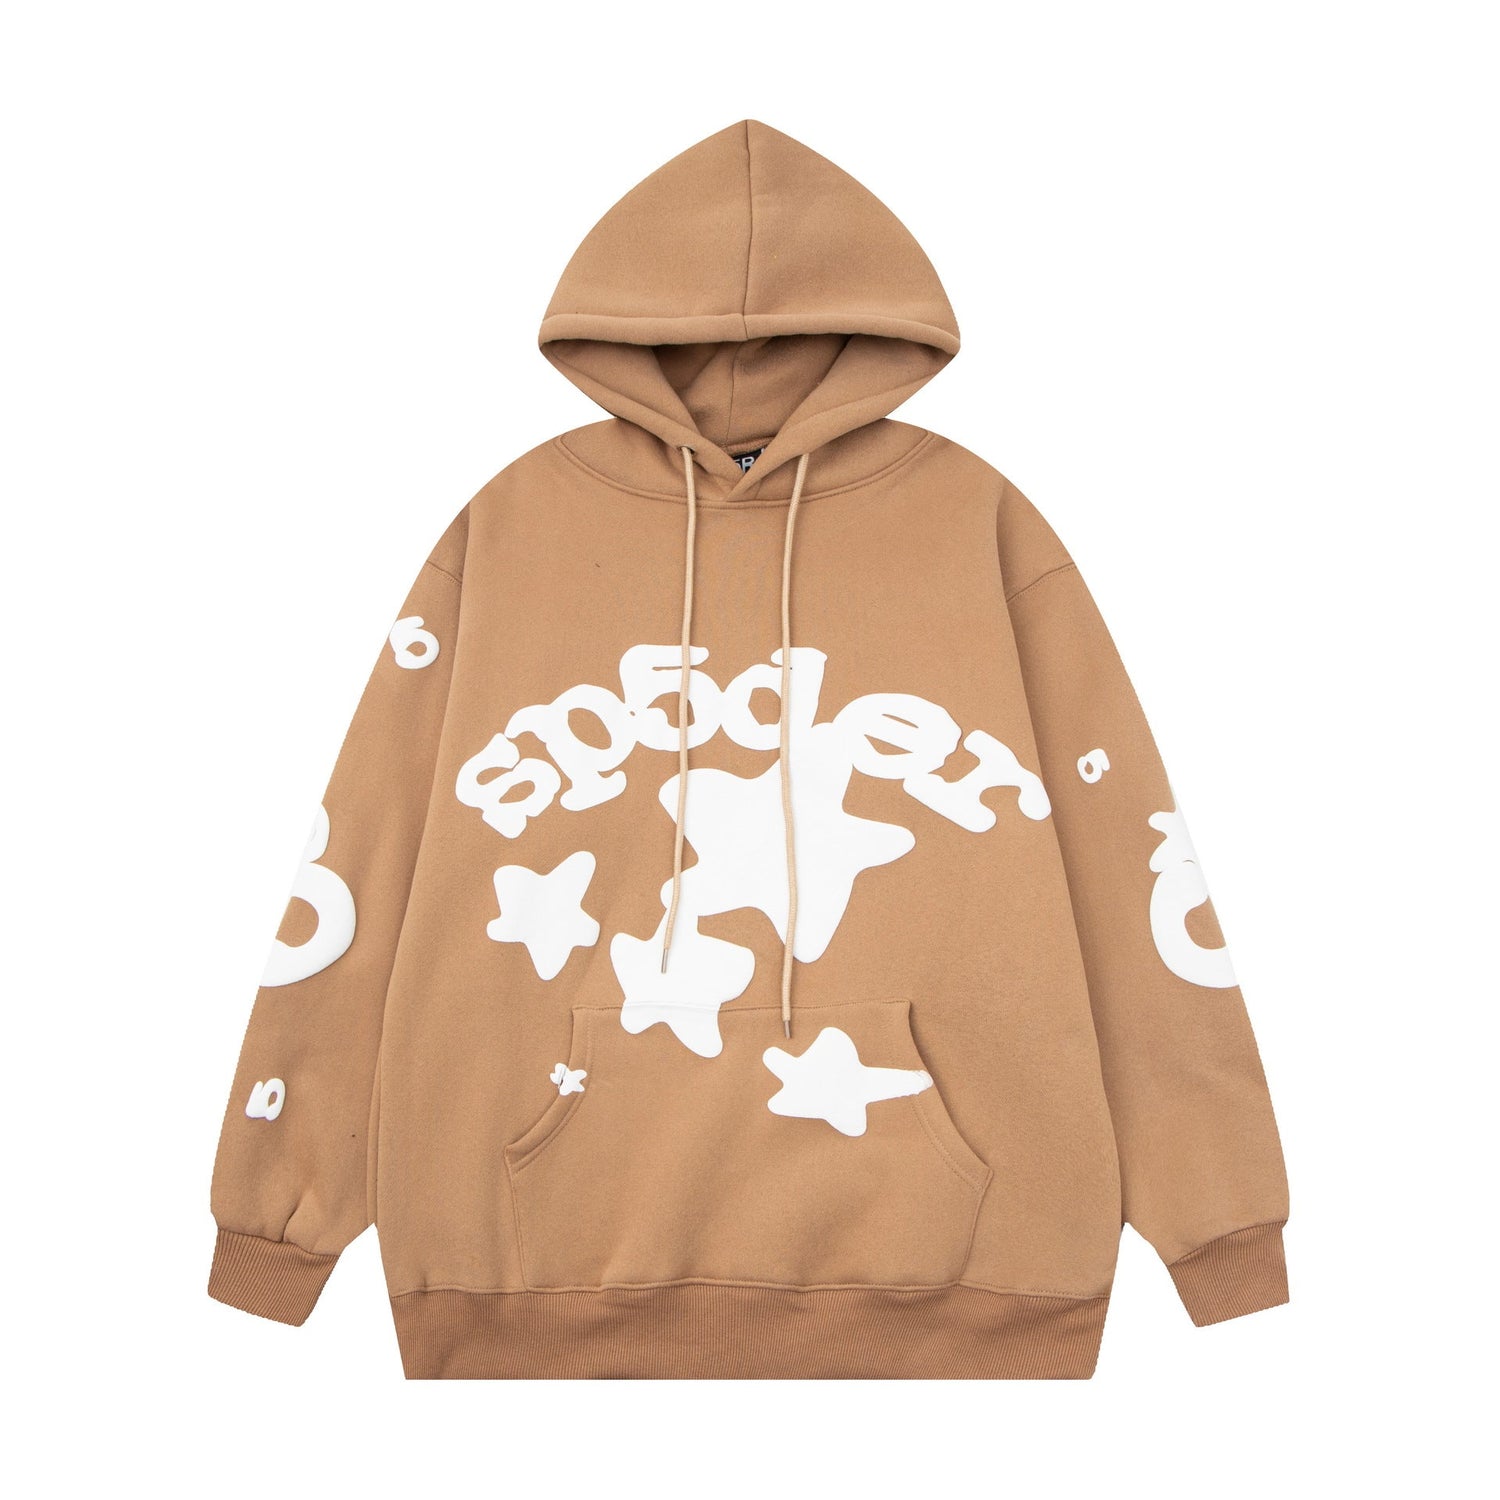 Chic Brown Sp5der Hoodie - Trendy Star Print Hooded Sweatshirt - Seakoff